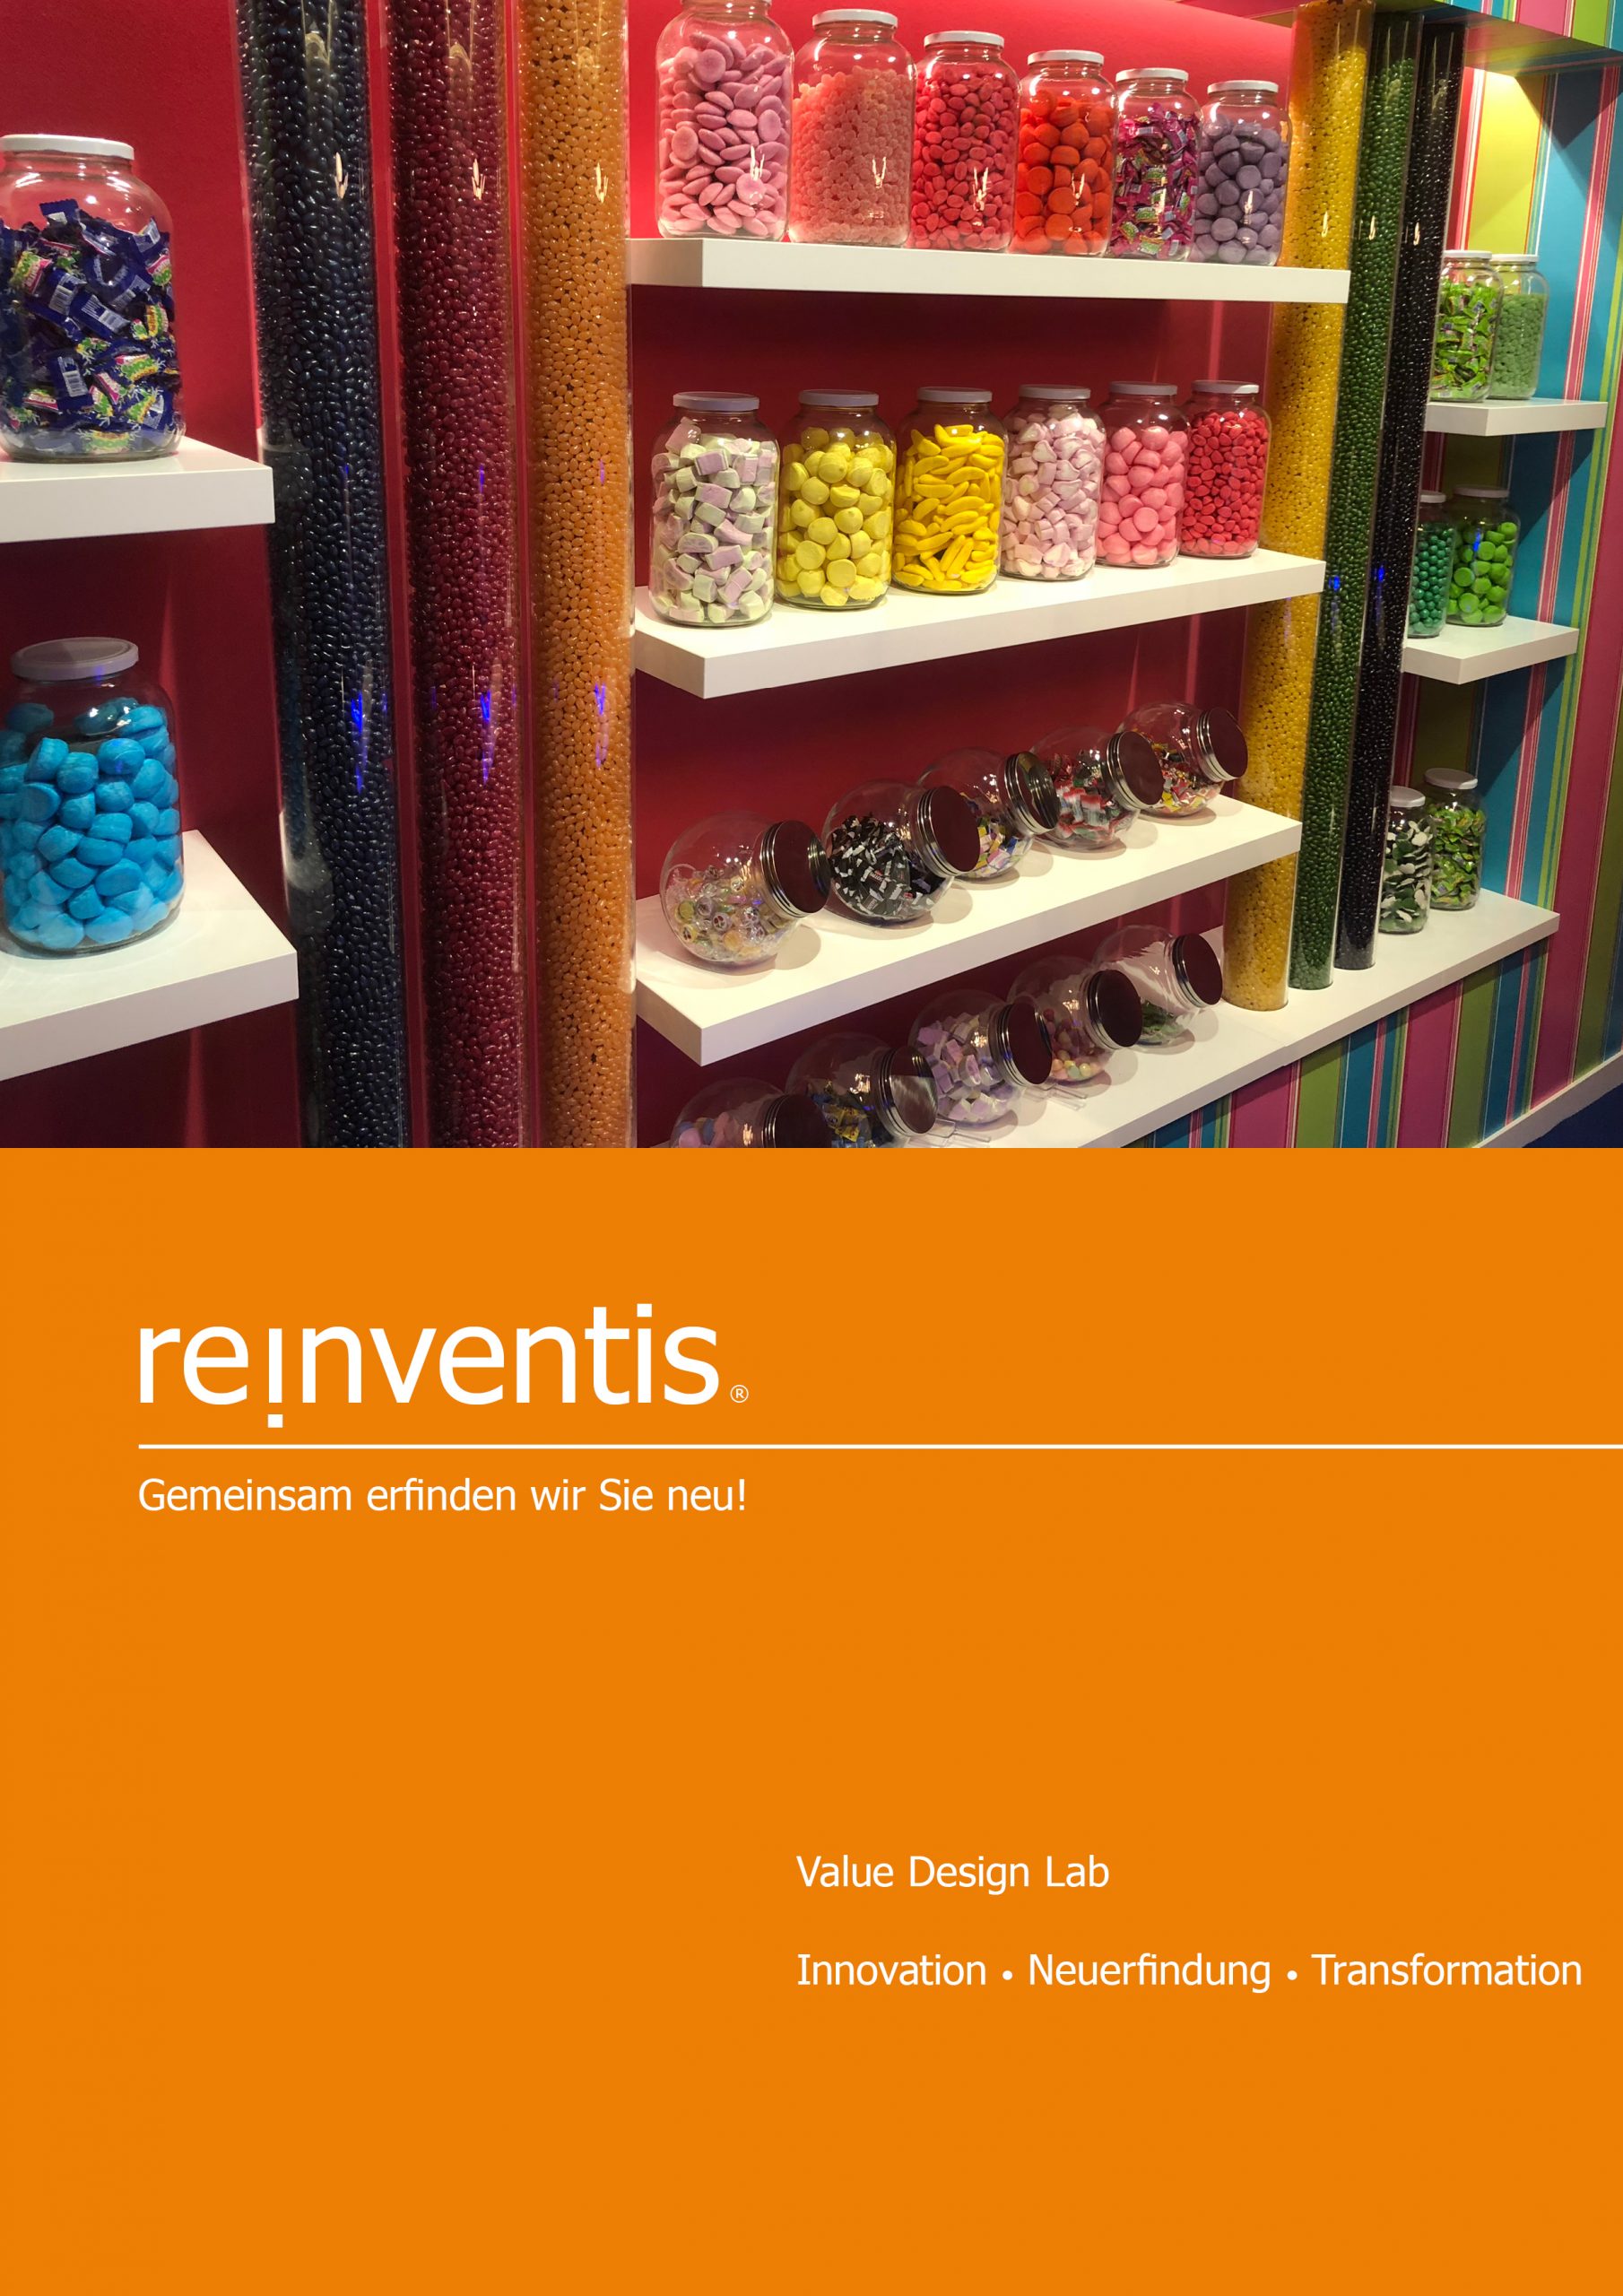 Value Design Lab - Strategieberatung - Innovation, Reinvention und Transformation - REINVENTIS - München